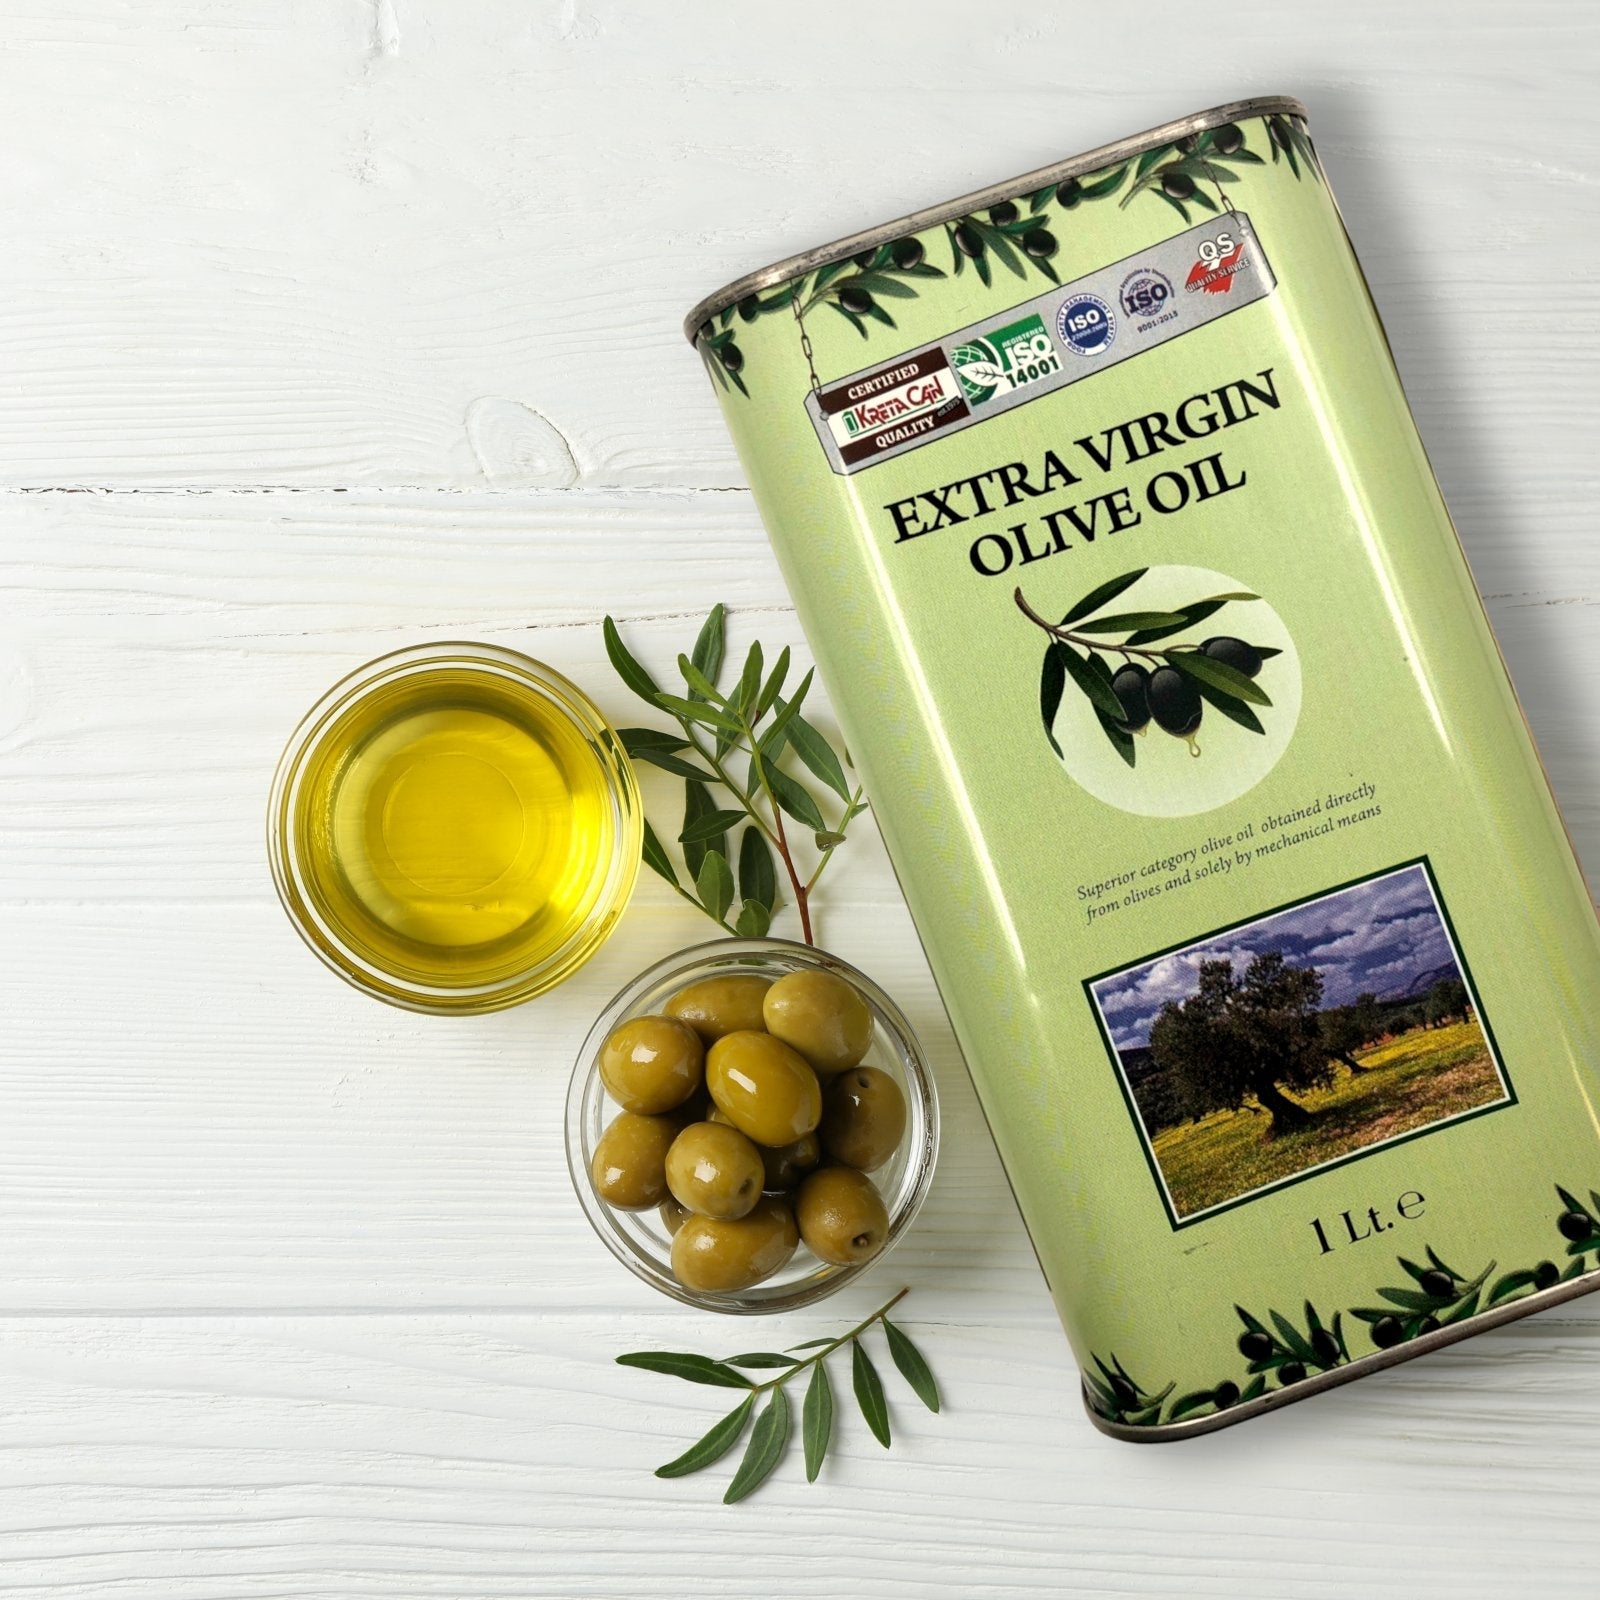 Griechisches Olivenöl nativ extra aus Kreta – 1000ml Dose - Upsell - OlivenZauber - Olivenöl neu erleben